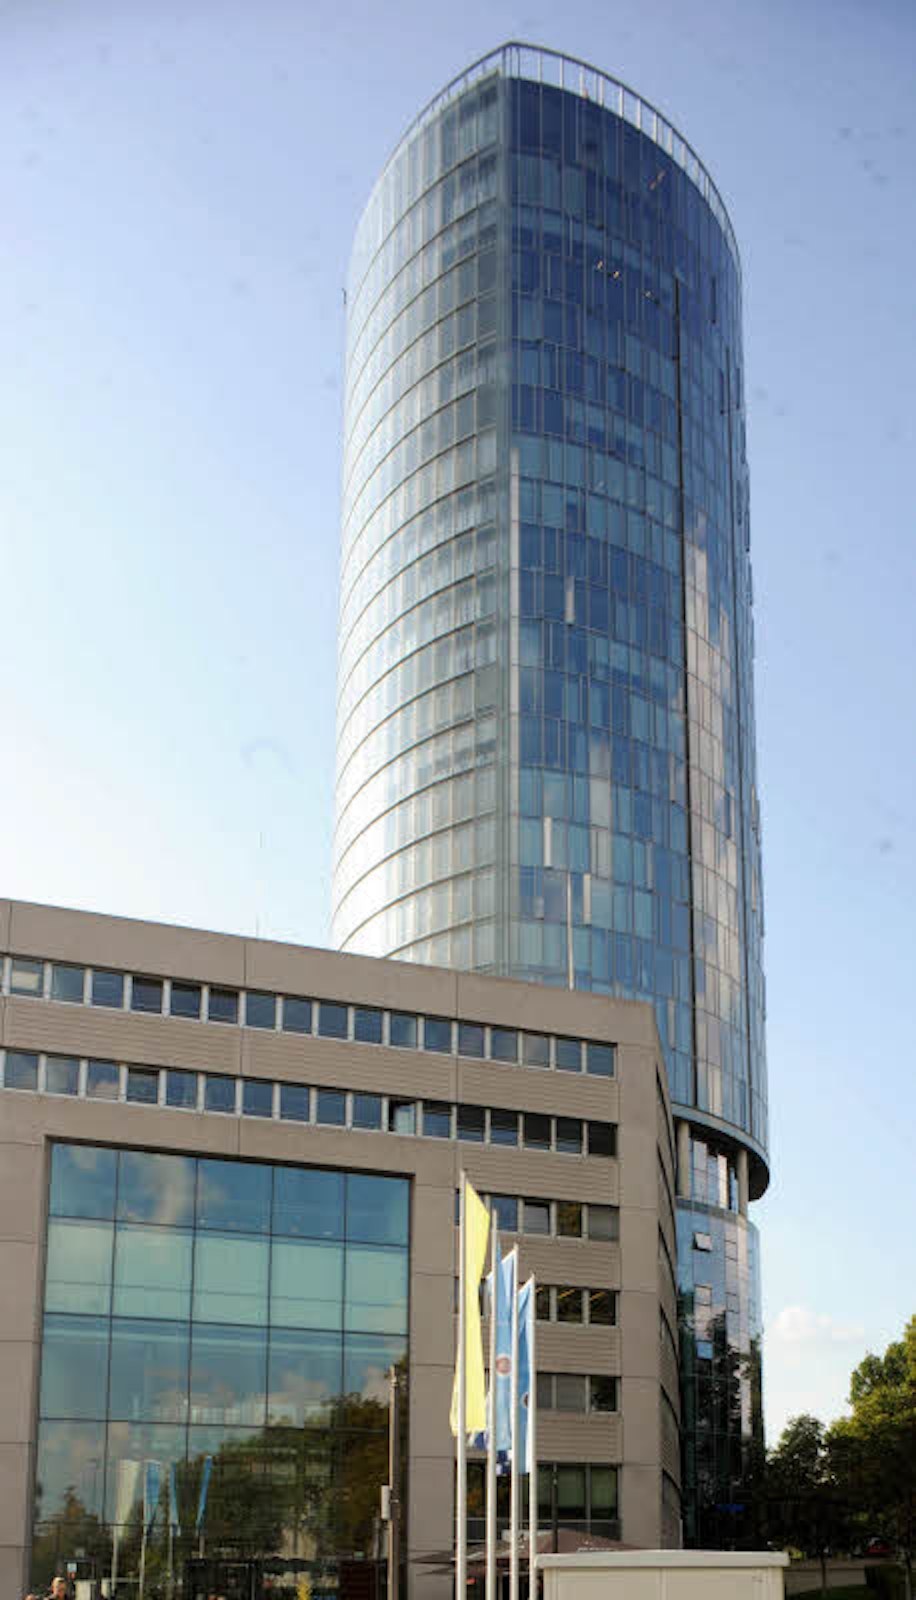 Der LVR-Turm in Deutz, neuer Dienstsitz der Gebäudewirtschaft